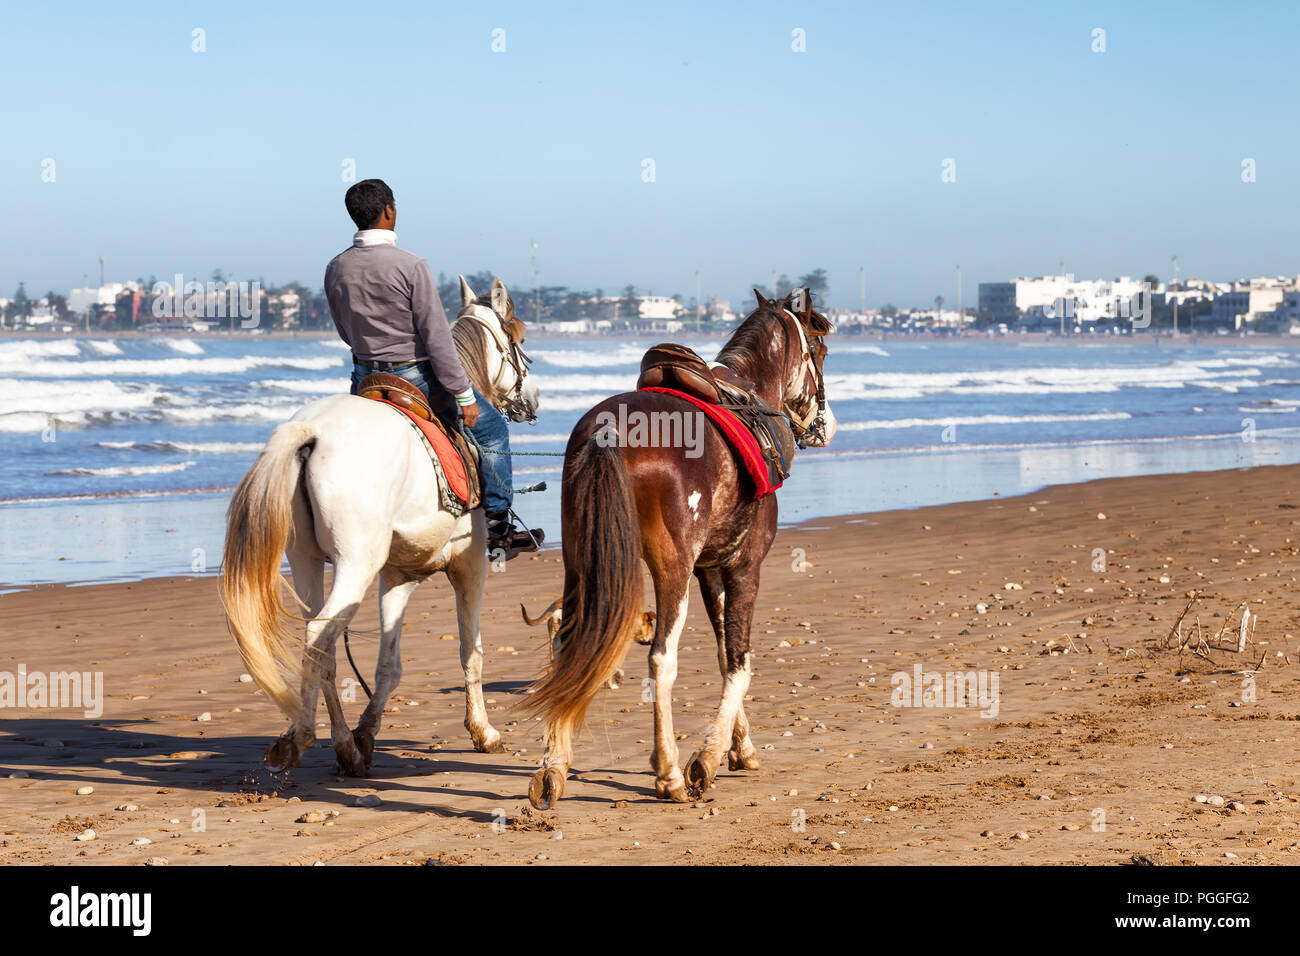 Marokko, Strand von Essaouira. Lokaler Mann auf dem Pferd mit einem zweiten riderless Horse. Stadt im Hintergrund gesehen. Stockfoto